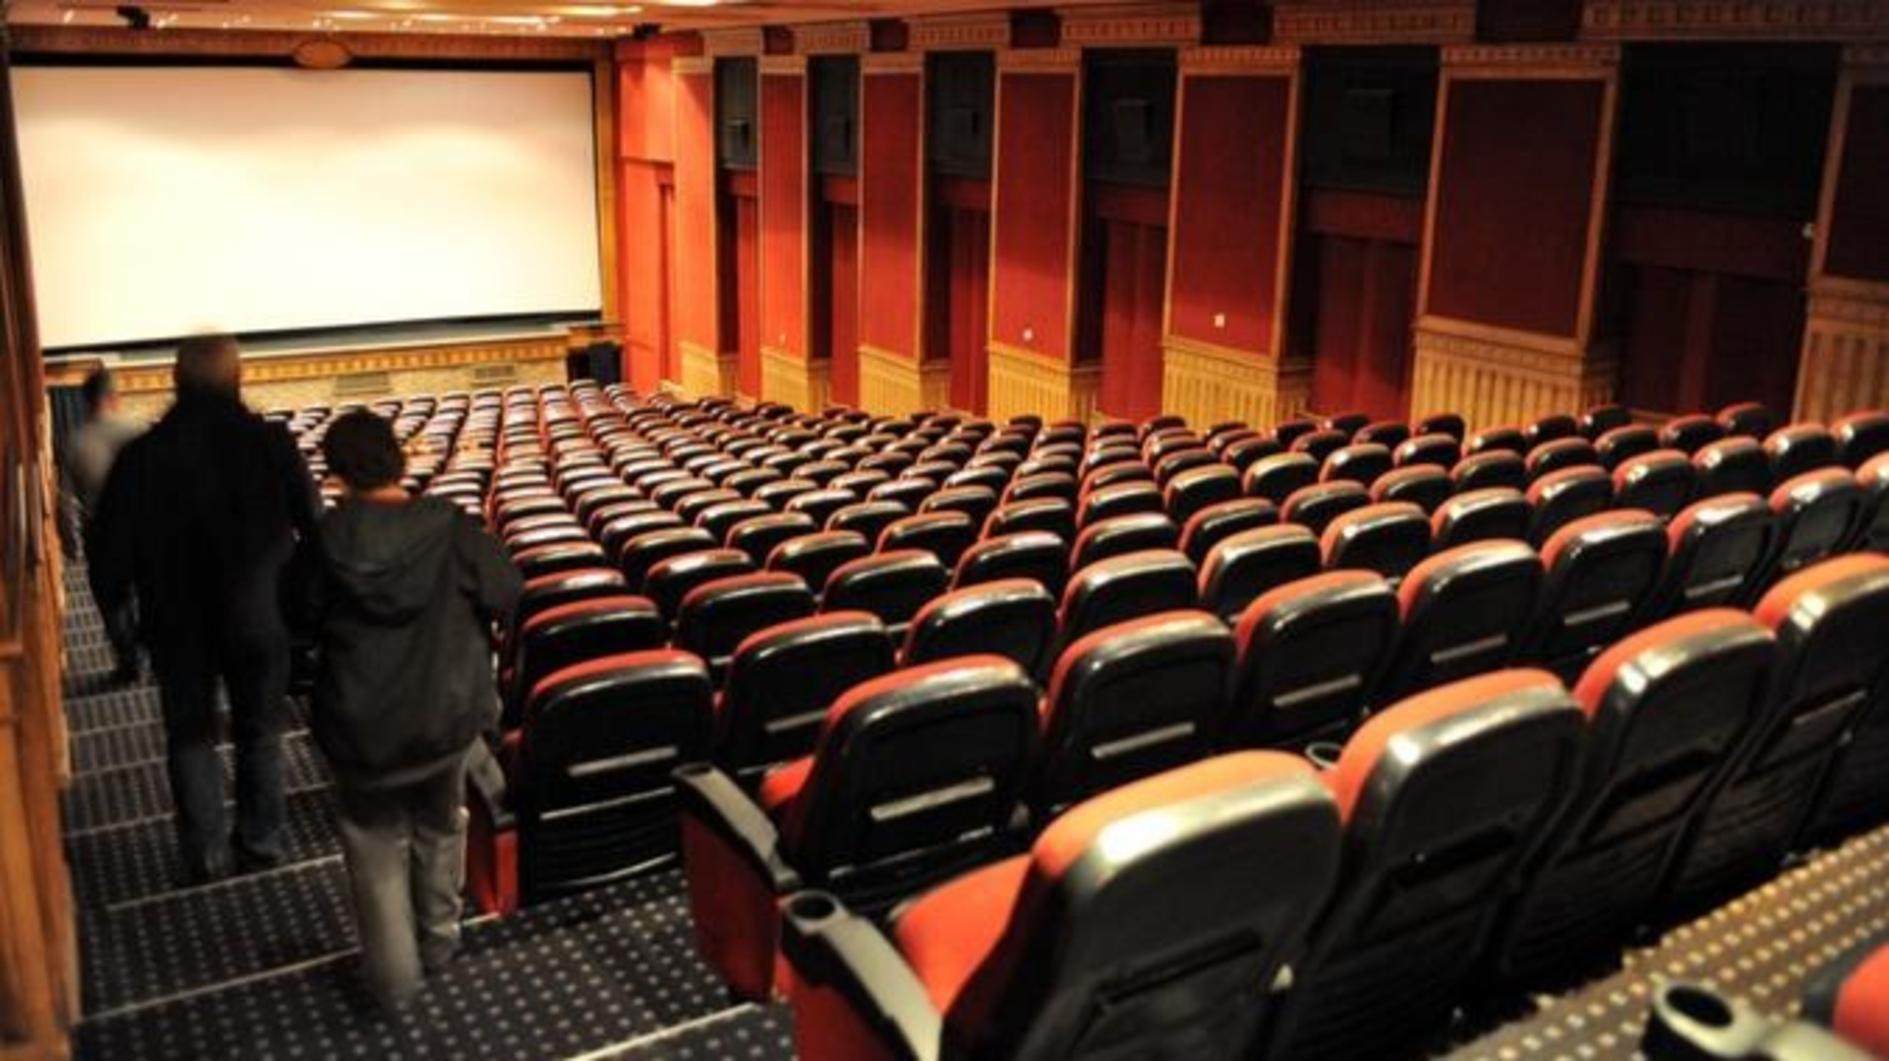 Turkse bioscopen bereikten een recordaantal bezoekers met 100.254 kijkers